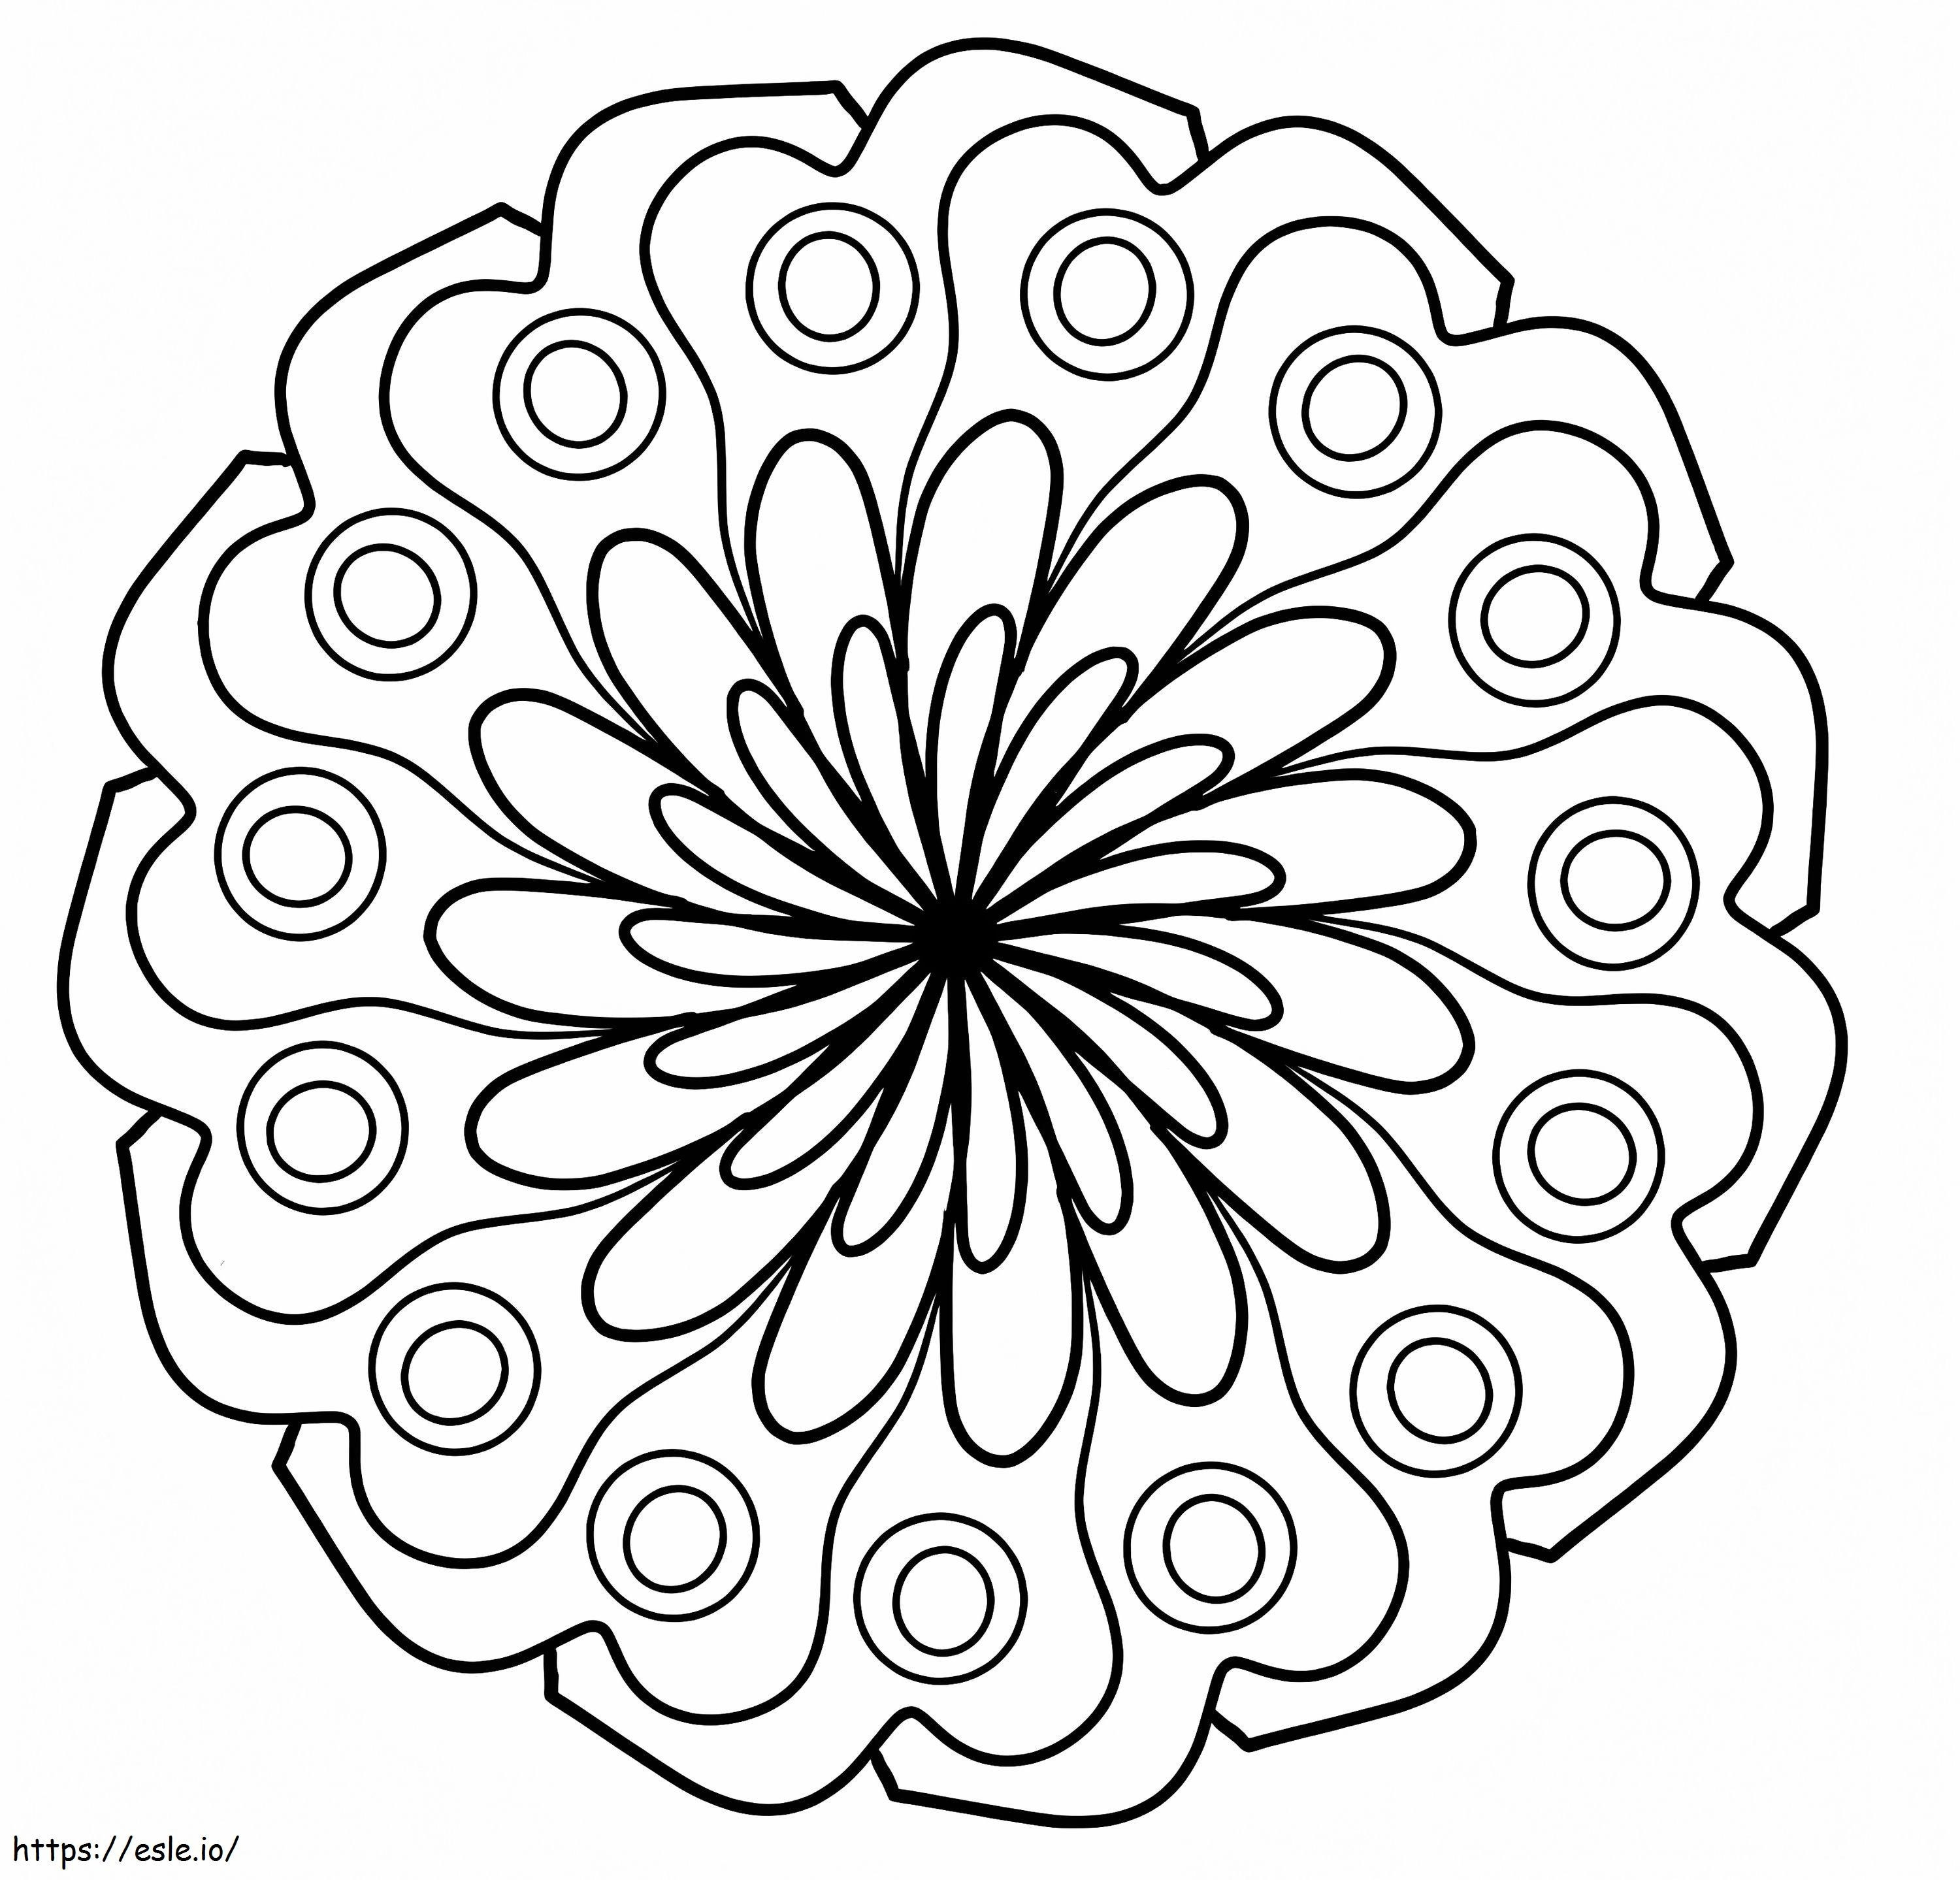 Mandala de flori simplă de colorat